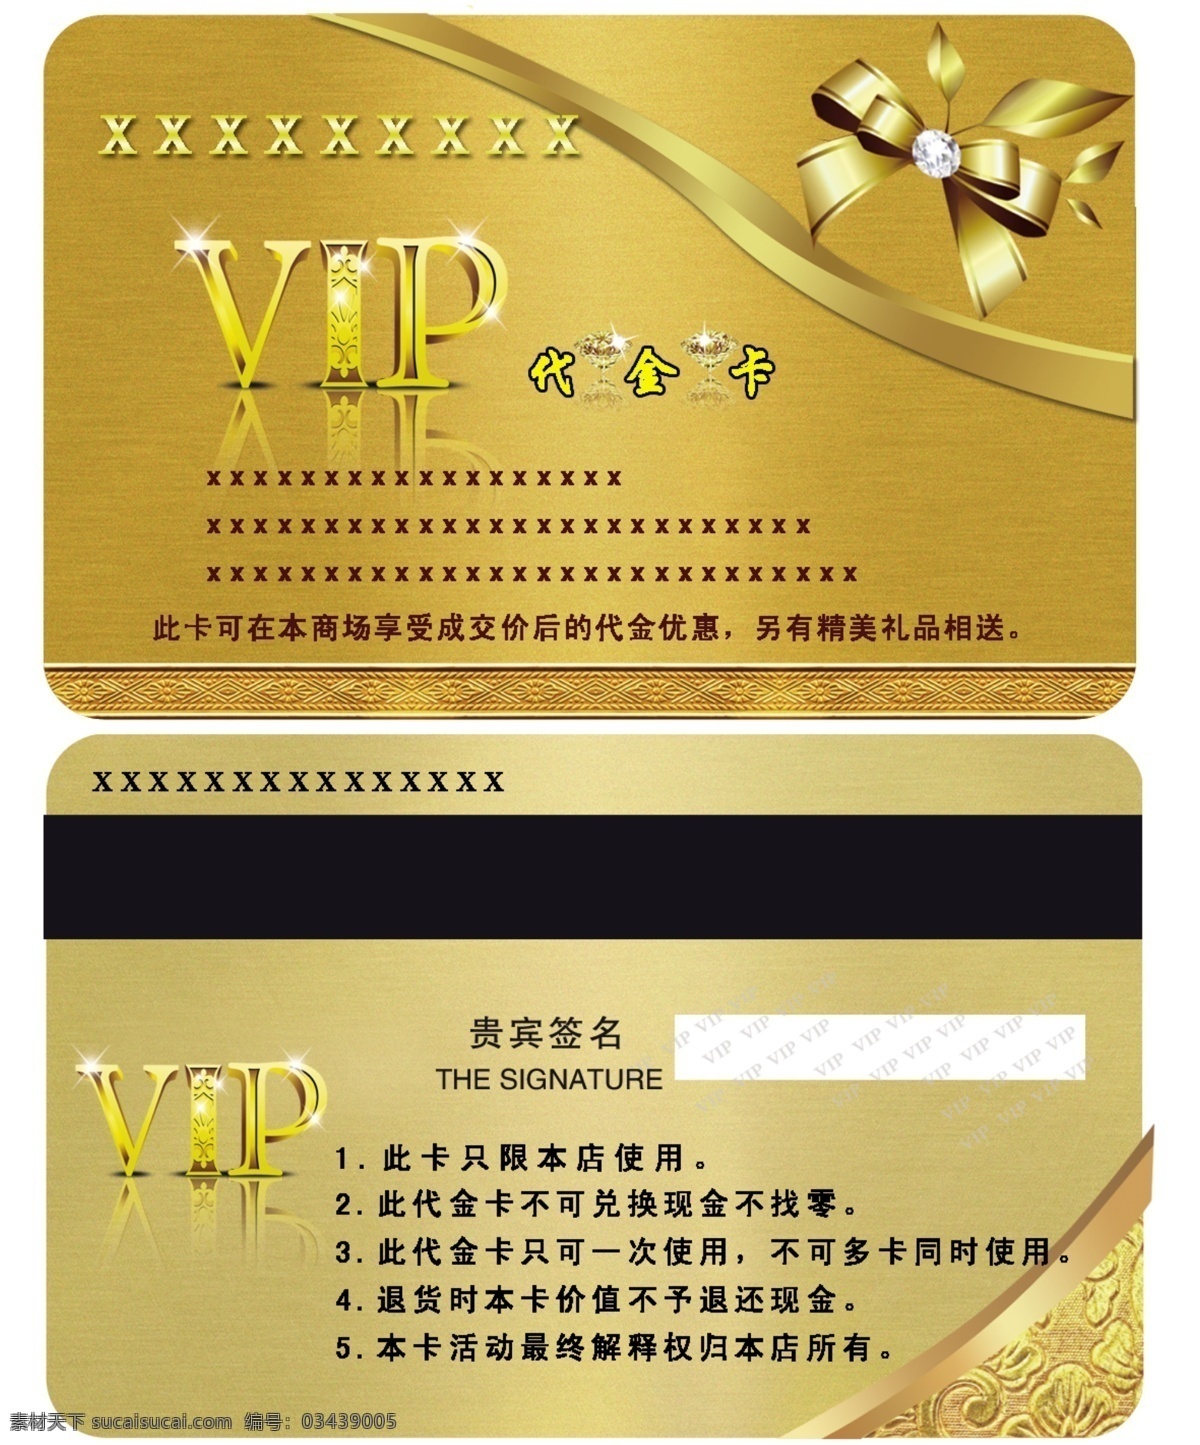 贵宾卡 代金卡 金黄色低纹 vip图标 花纹 名片卡片 广告设计模板 源文件